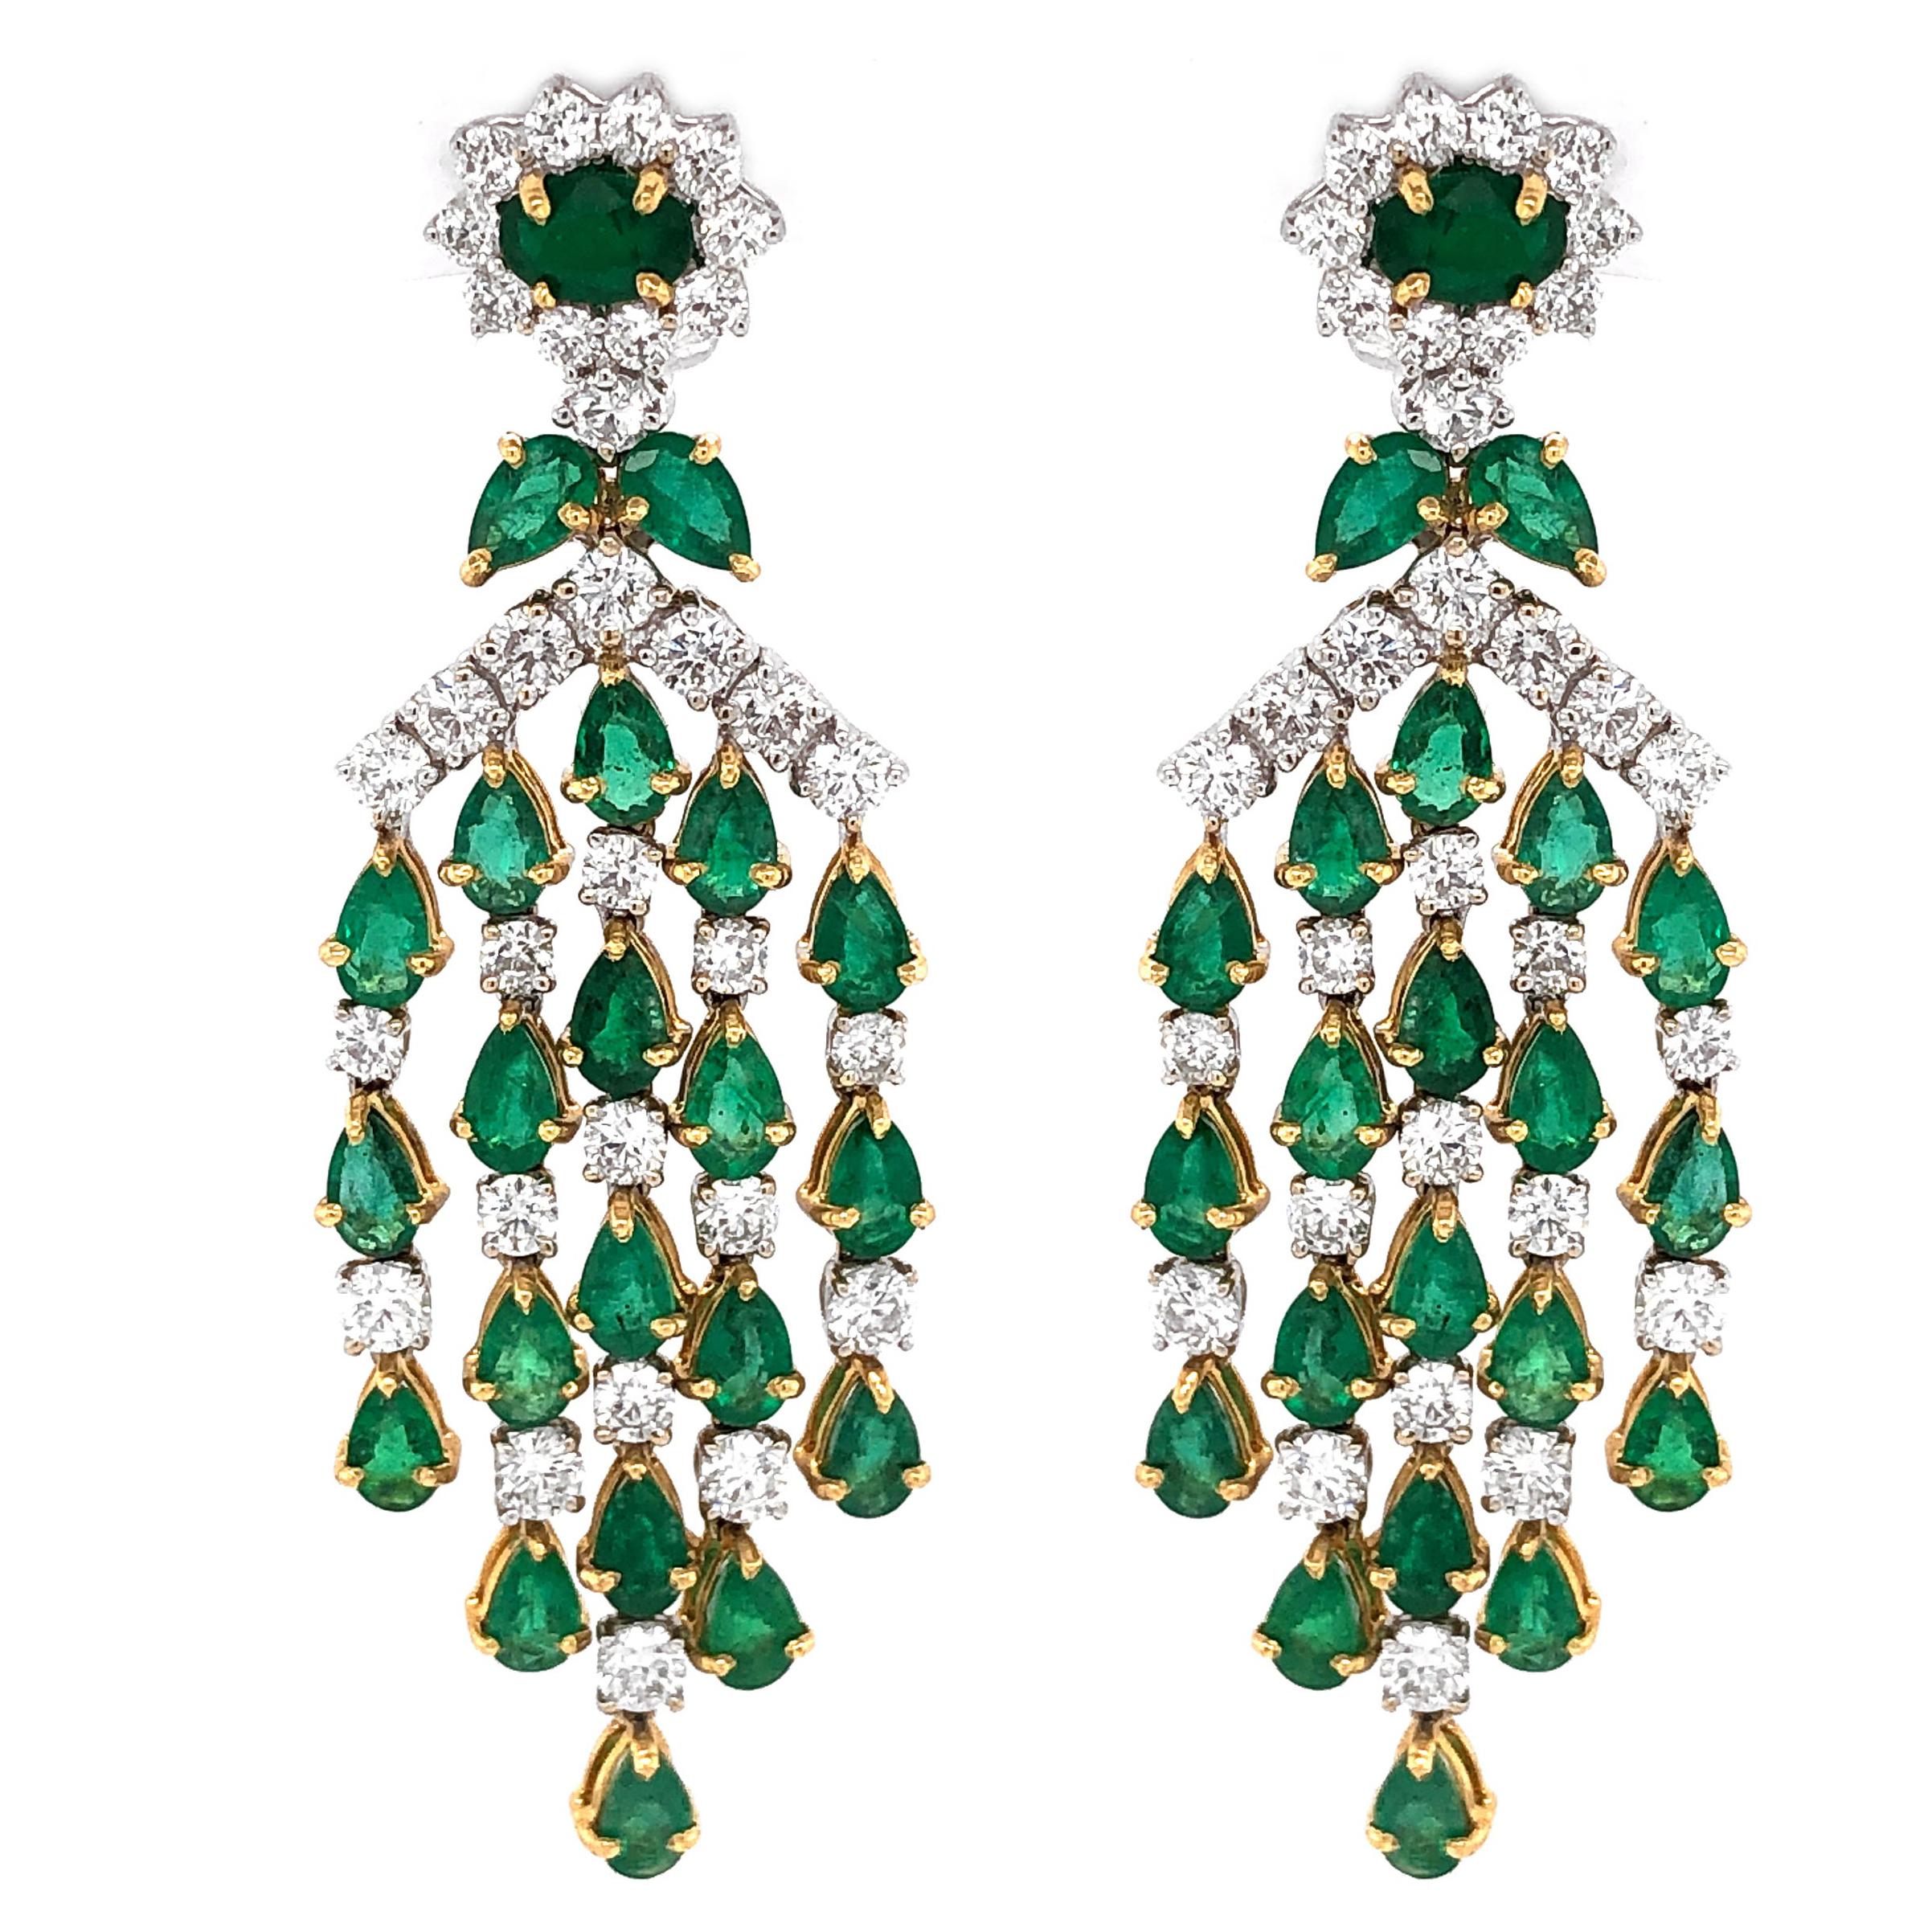 Zambian Pear Cut Emeralds 10.36 Carat Diamond 18 Karat Gold Chandelier Earrings For Sale